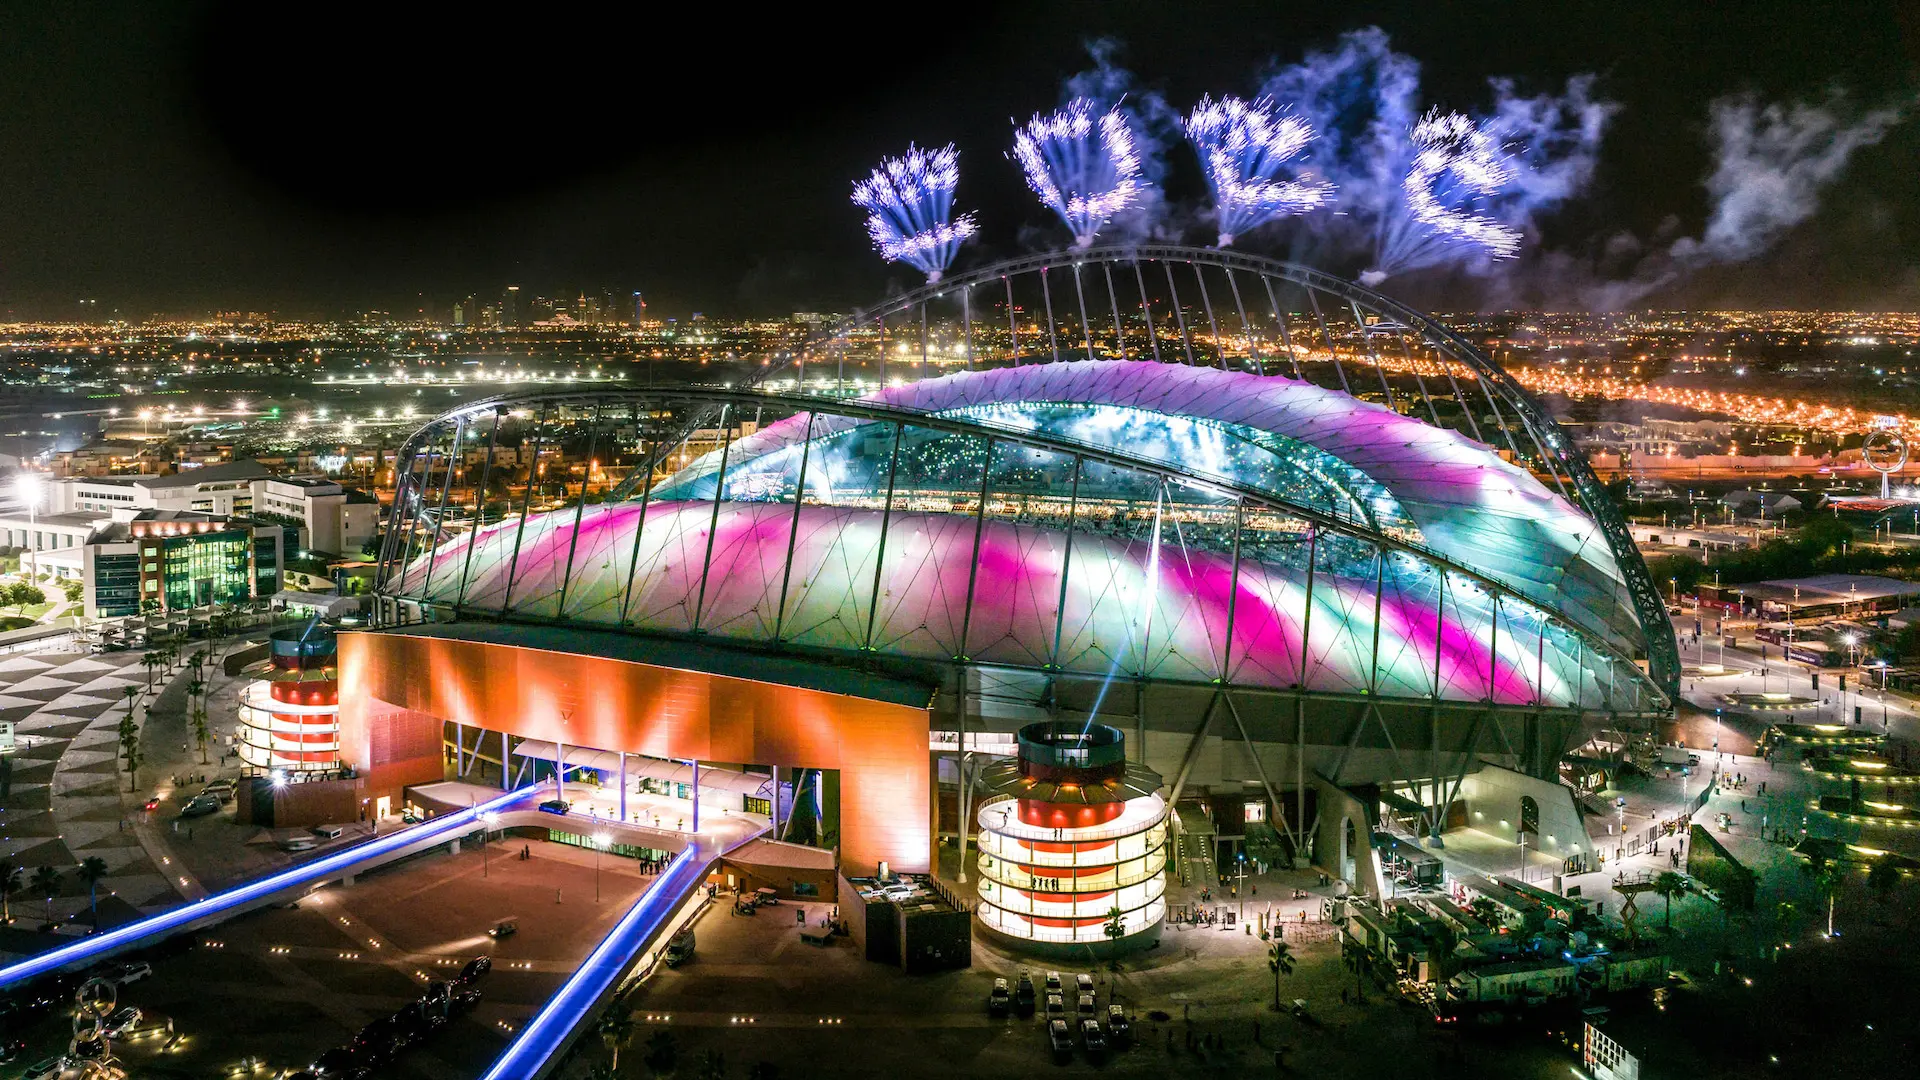 Así es el renovado Estadio Internacional Khalifa, sede del Mundial Catar 2022